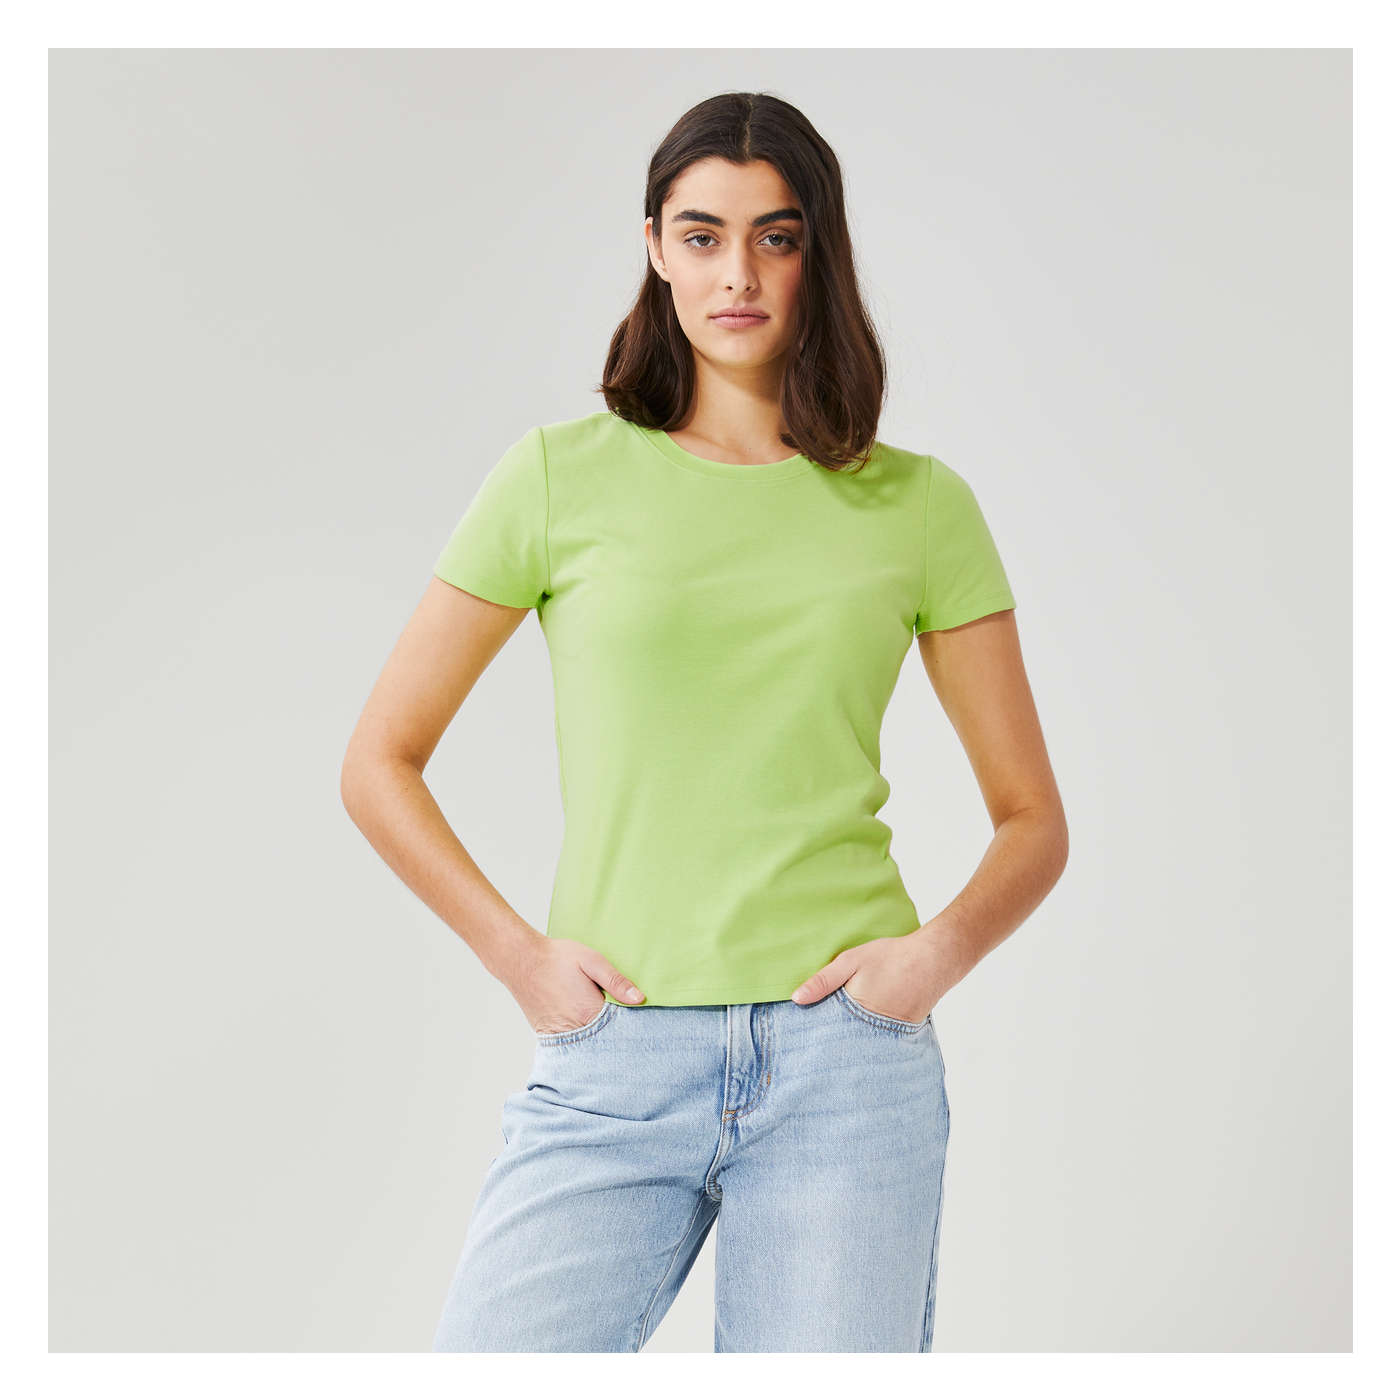 Women+ Essential T-Shirt in Light Green from Joe Fresh